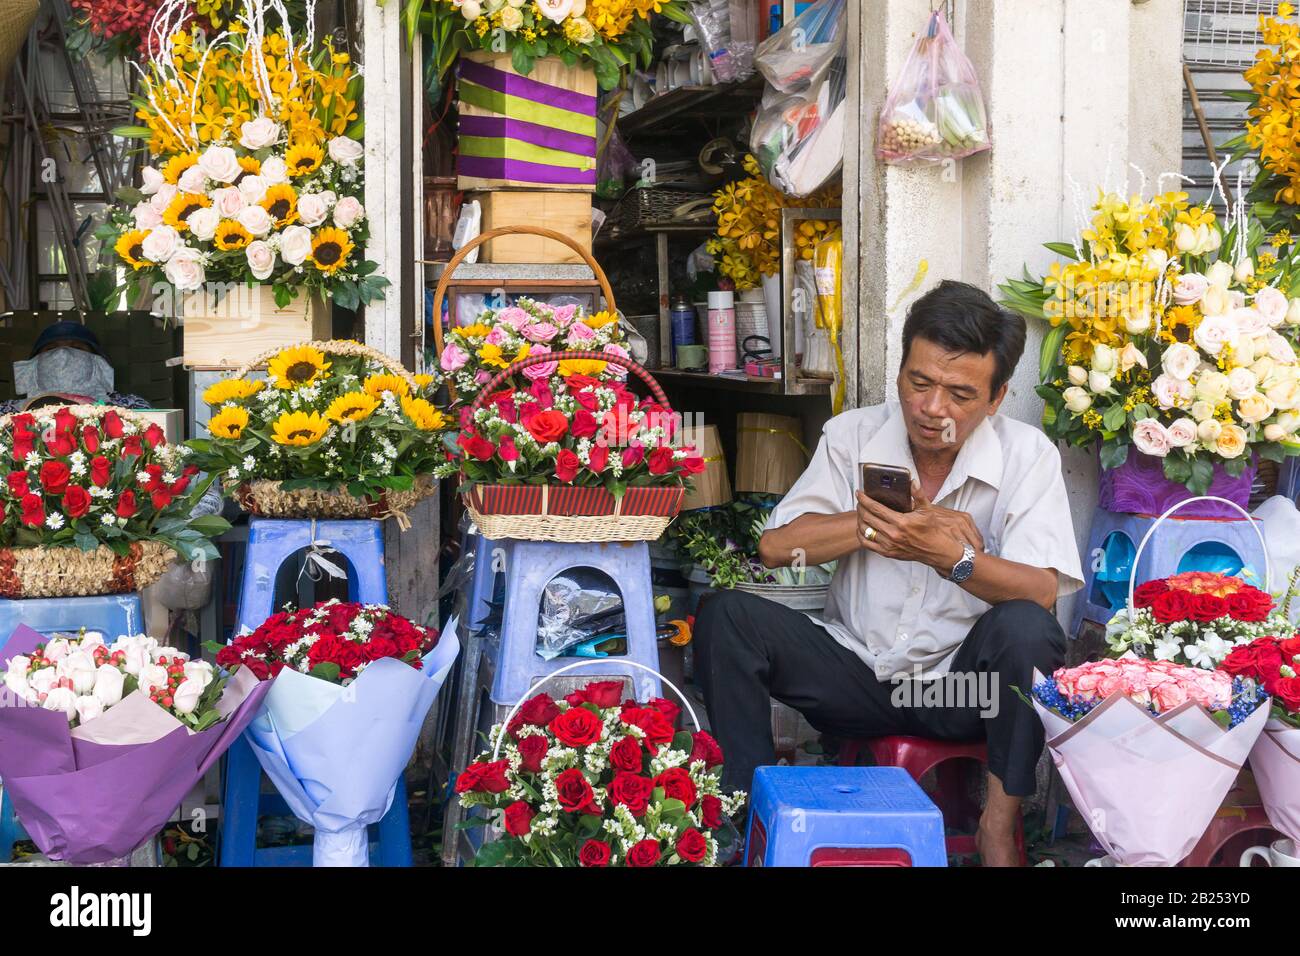 Marché aux fleurs de Saigon (Ho Chi Minh City) - un homme vietnamien qui vend des fleurs au marché Ben Thanh à Saigon, au Vietnam, en Asie du Sud-est. Banque D'Images